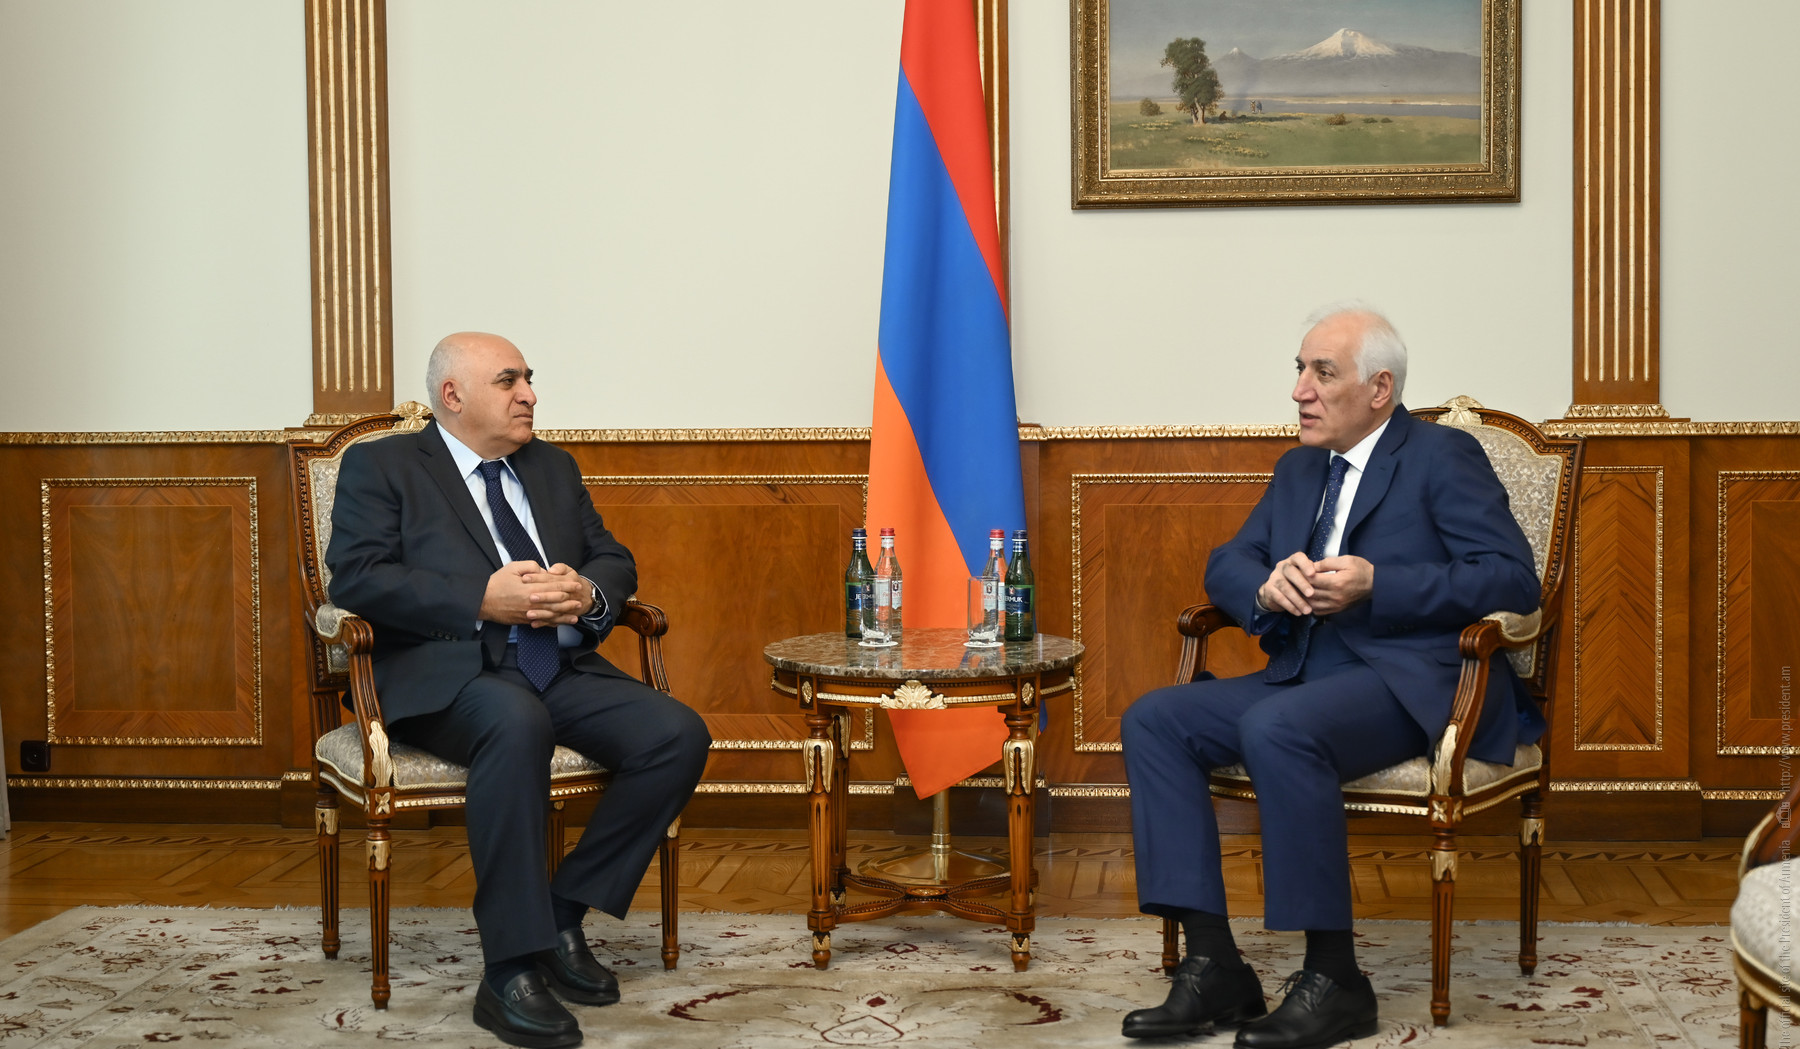 Վահագն Խաչատուրյանը և Արսեն Ղազարյանը մտքեր են փոխանակել Հայաստանի տնտեսական զարգացումների և ներդրումային ծրագրերի շուրջ